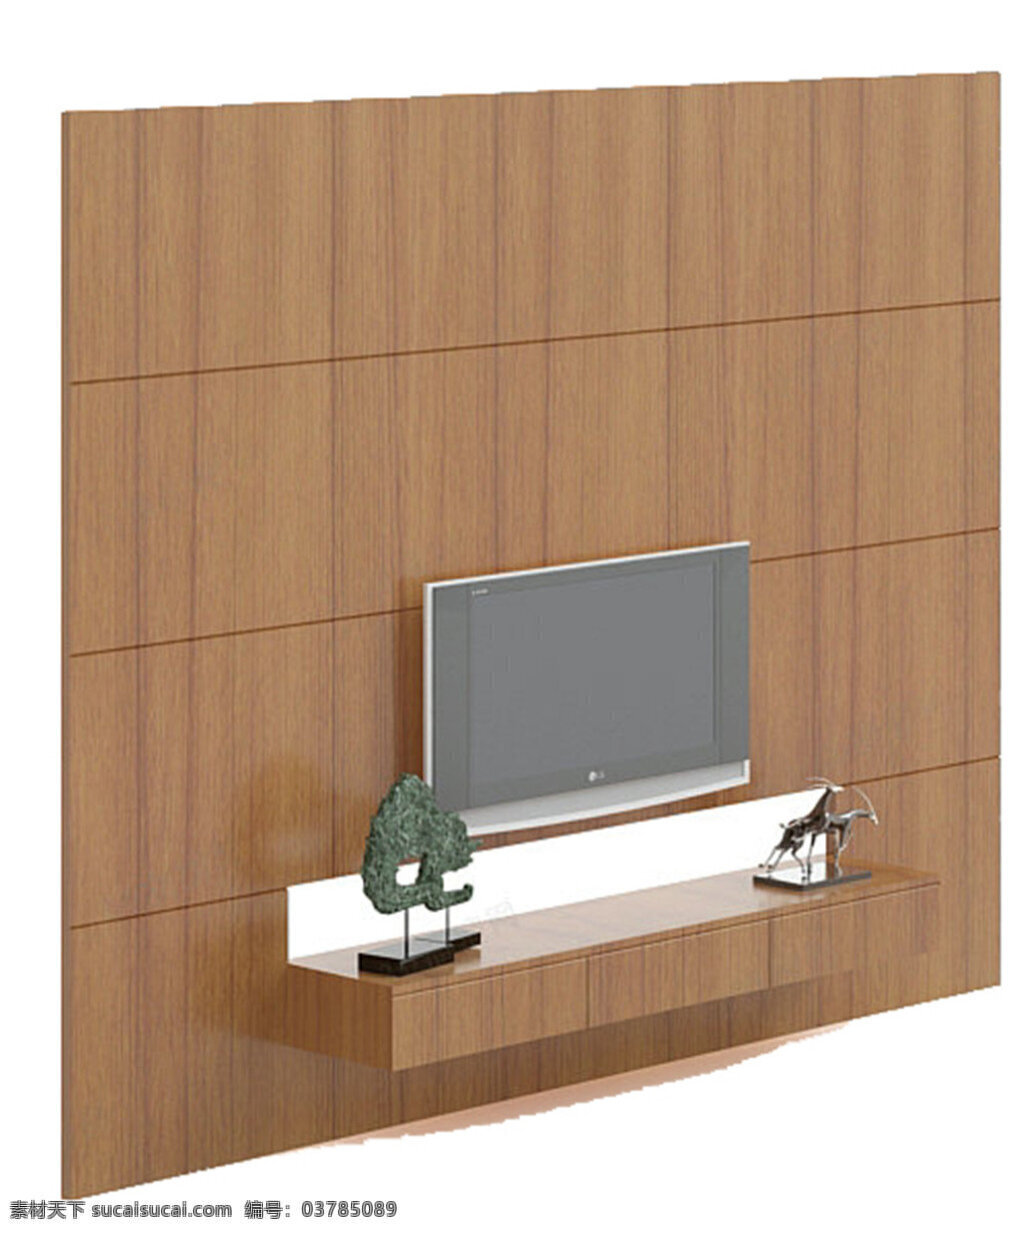 max 模板下载 素材图片 背景 墙 模型 电视 电视柜 白色